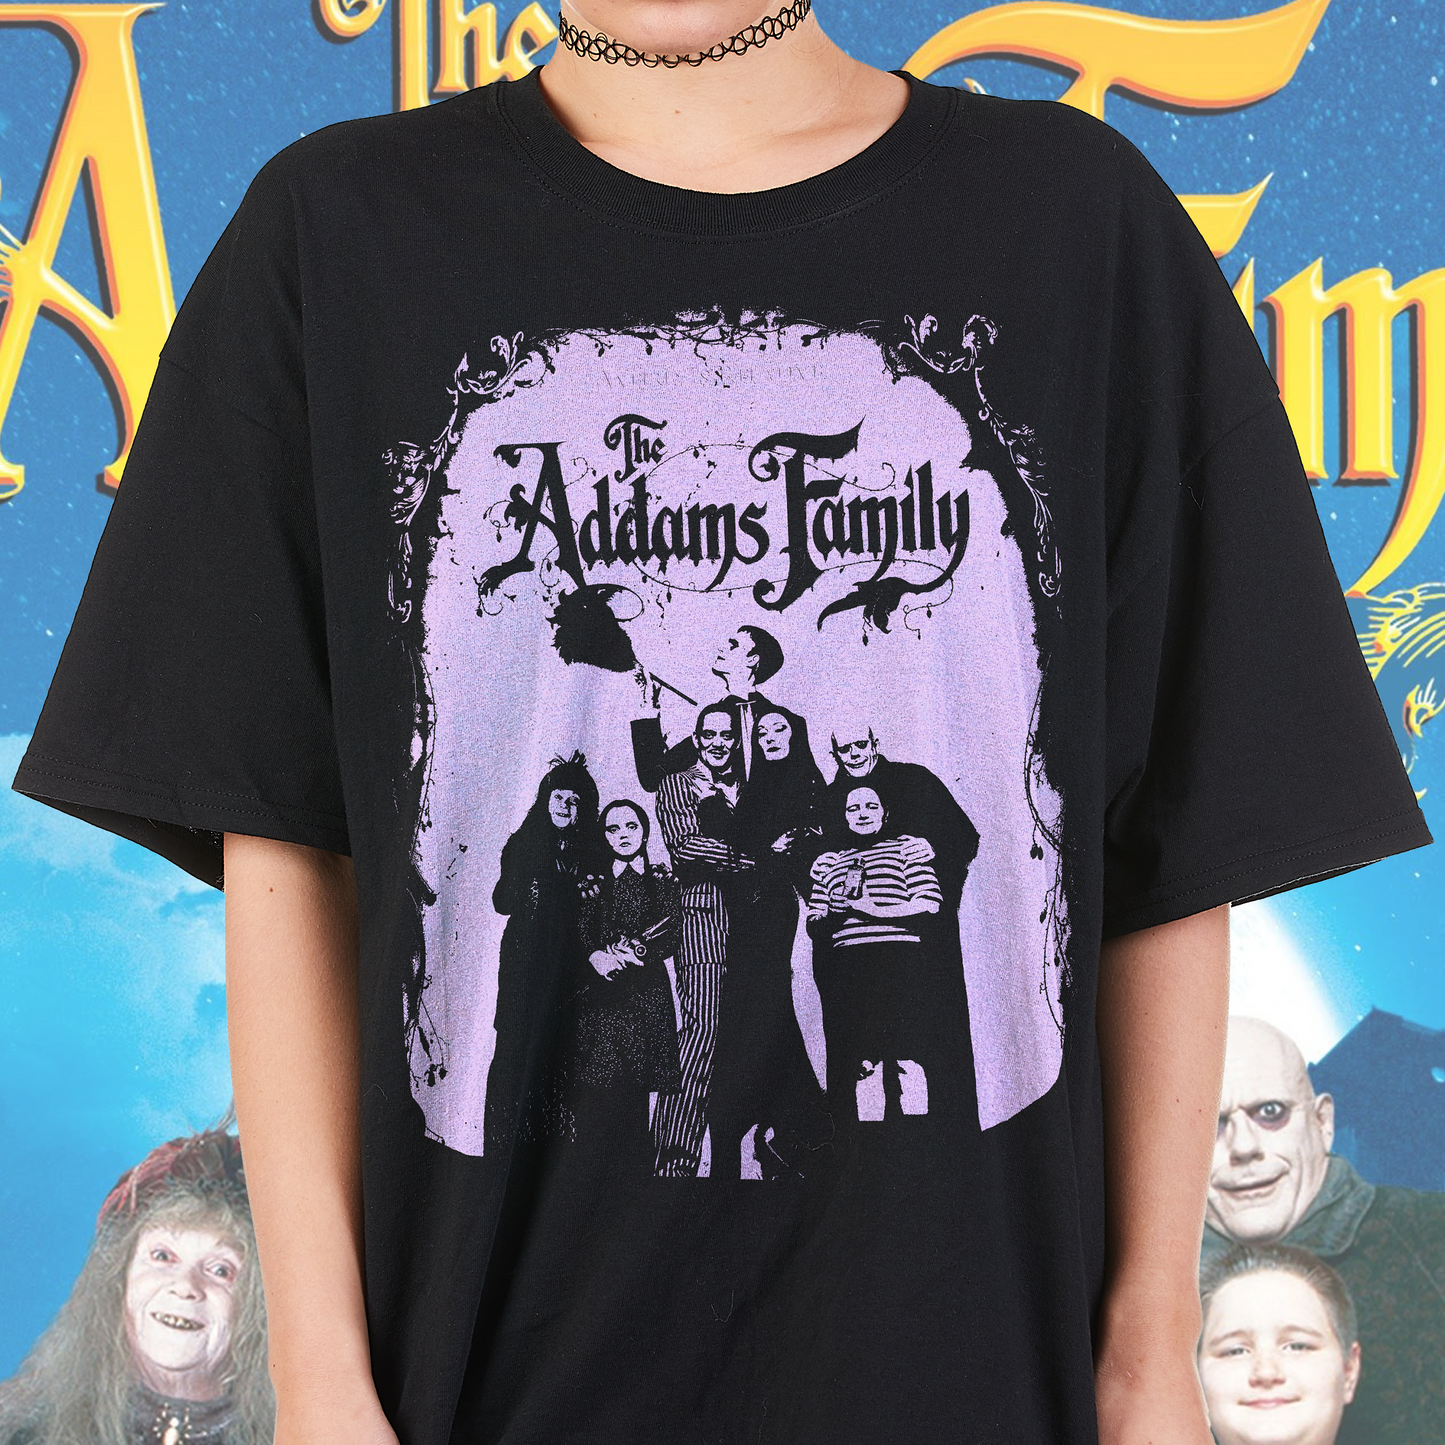 The Addams Family Tshirt 